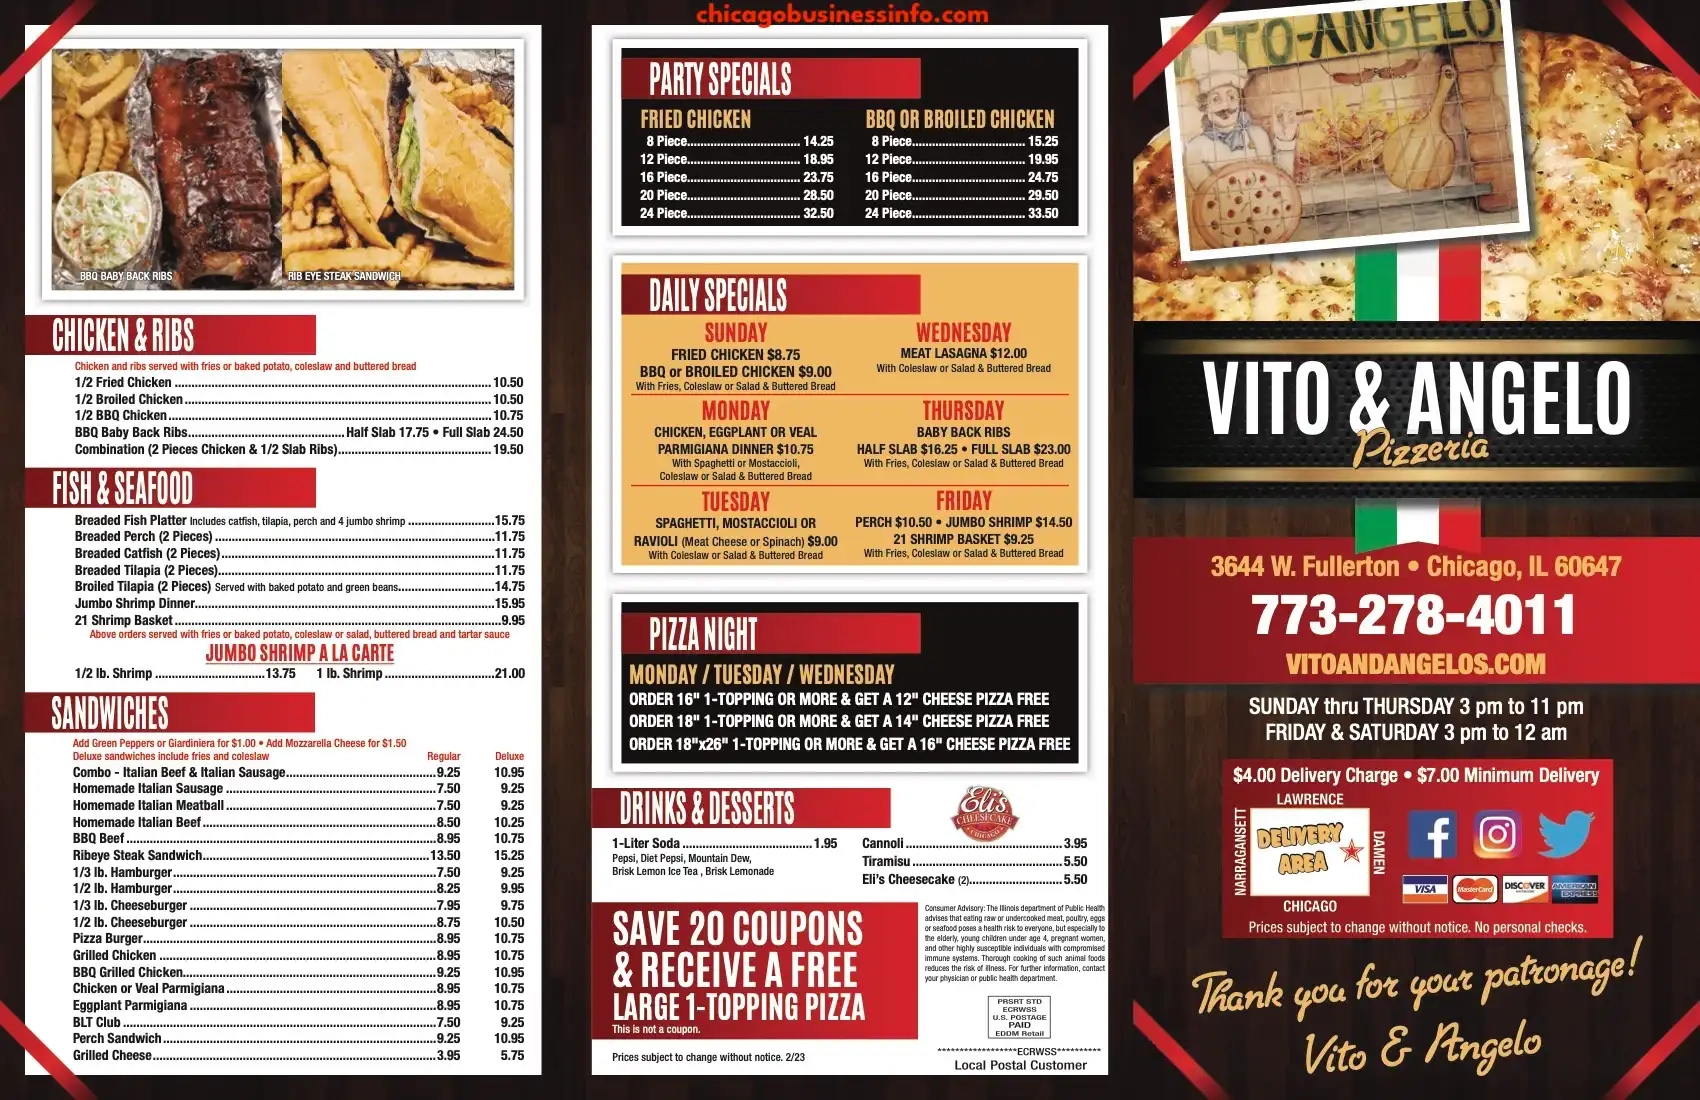 Vito & Angelo Pizzeria Chicago Carry Out Menu 1